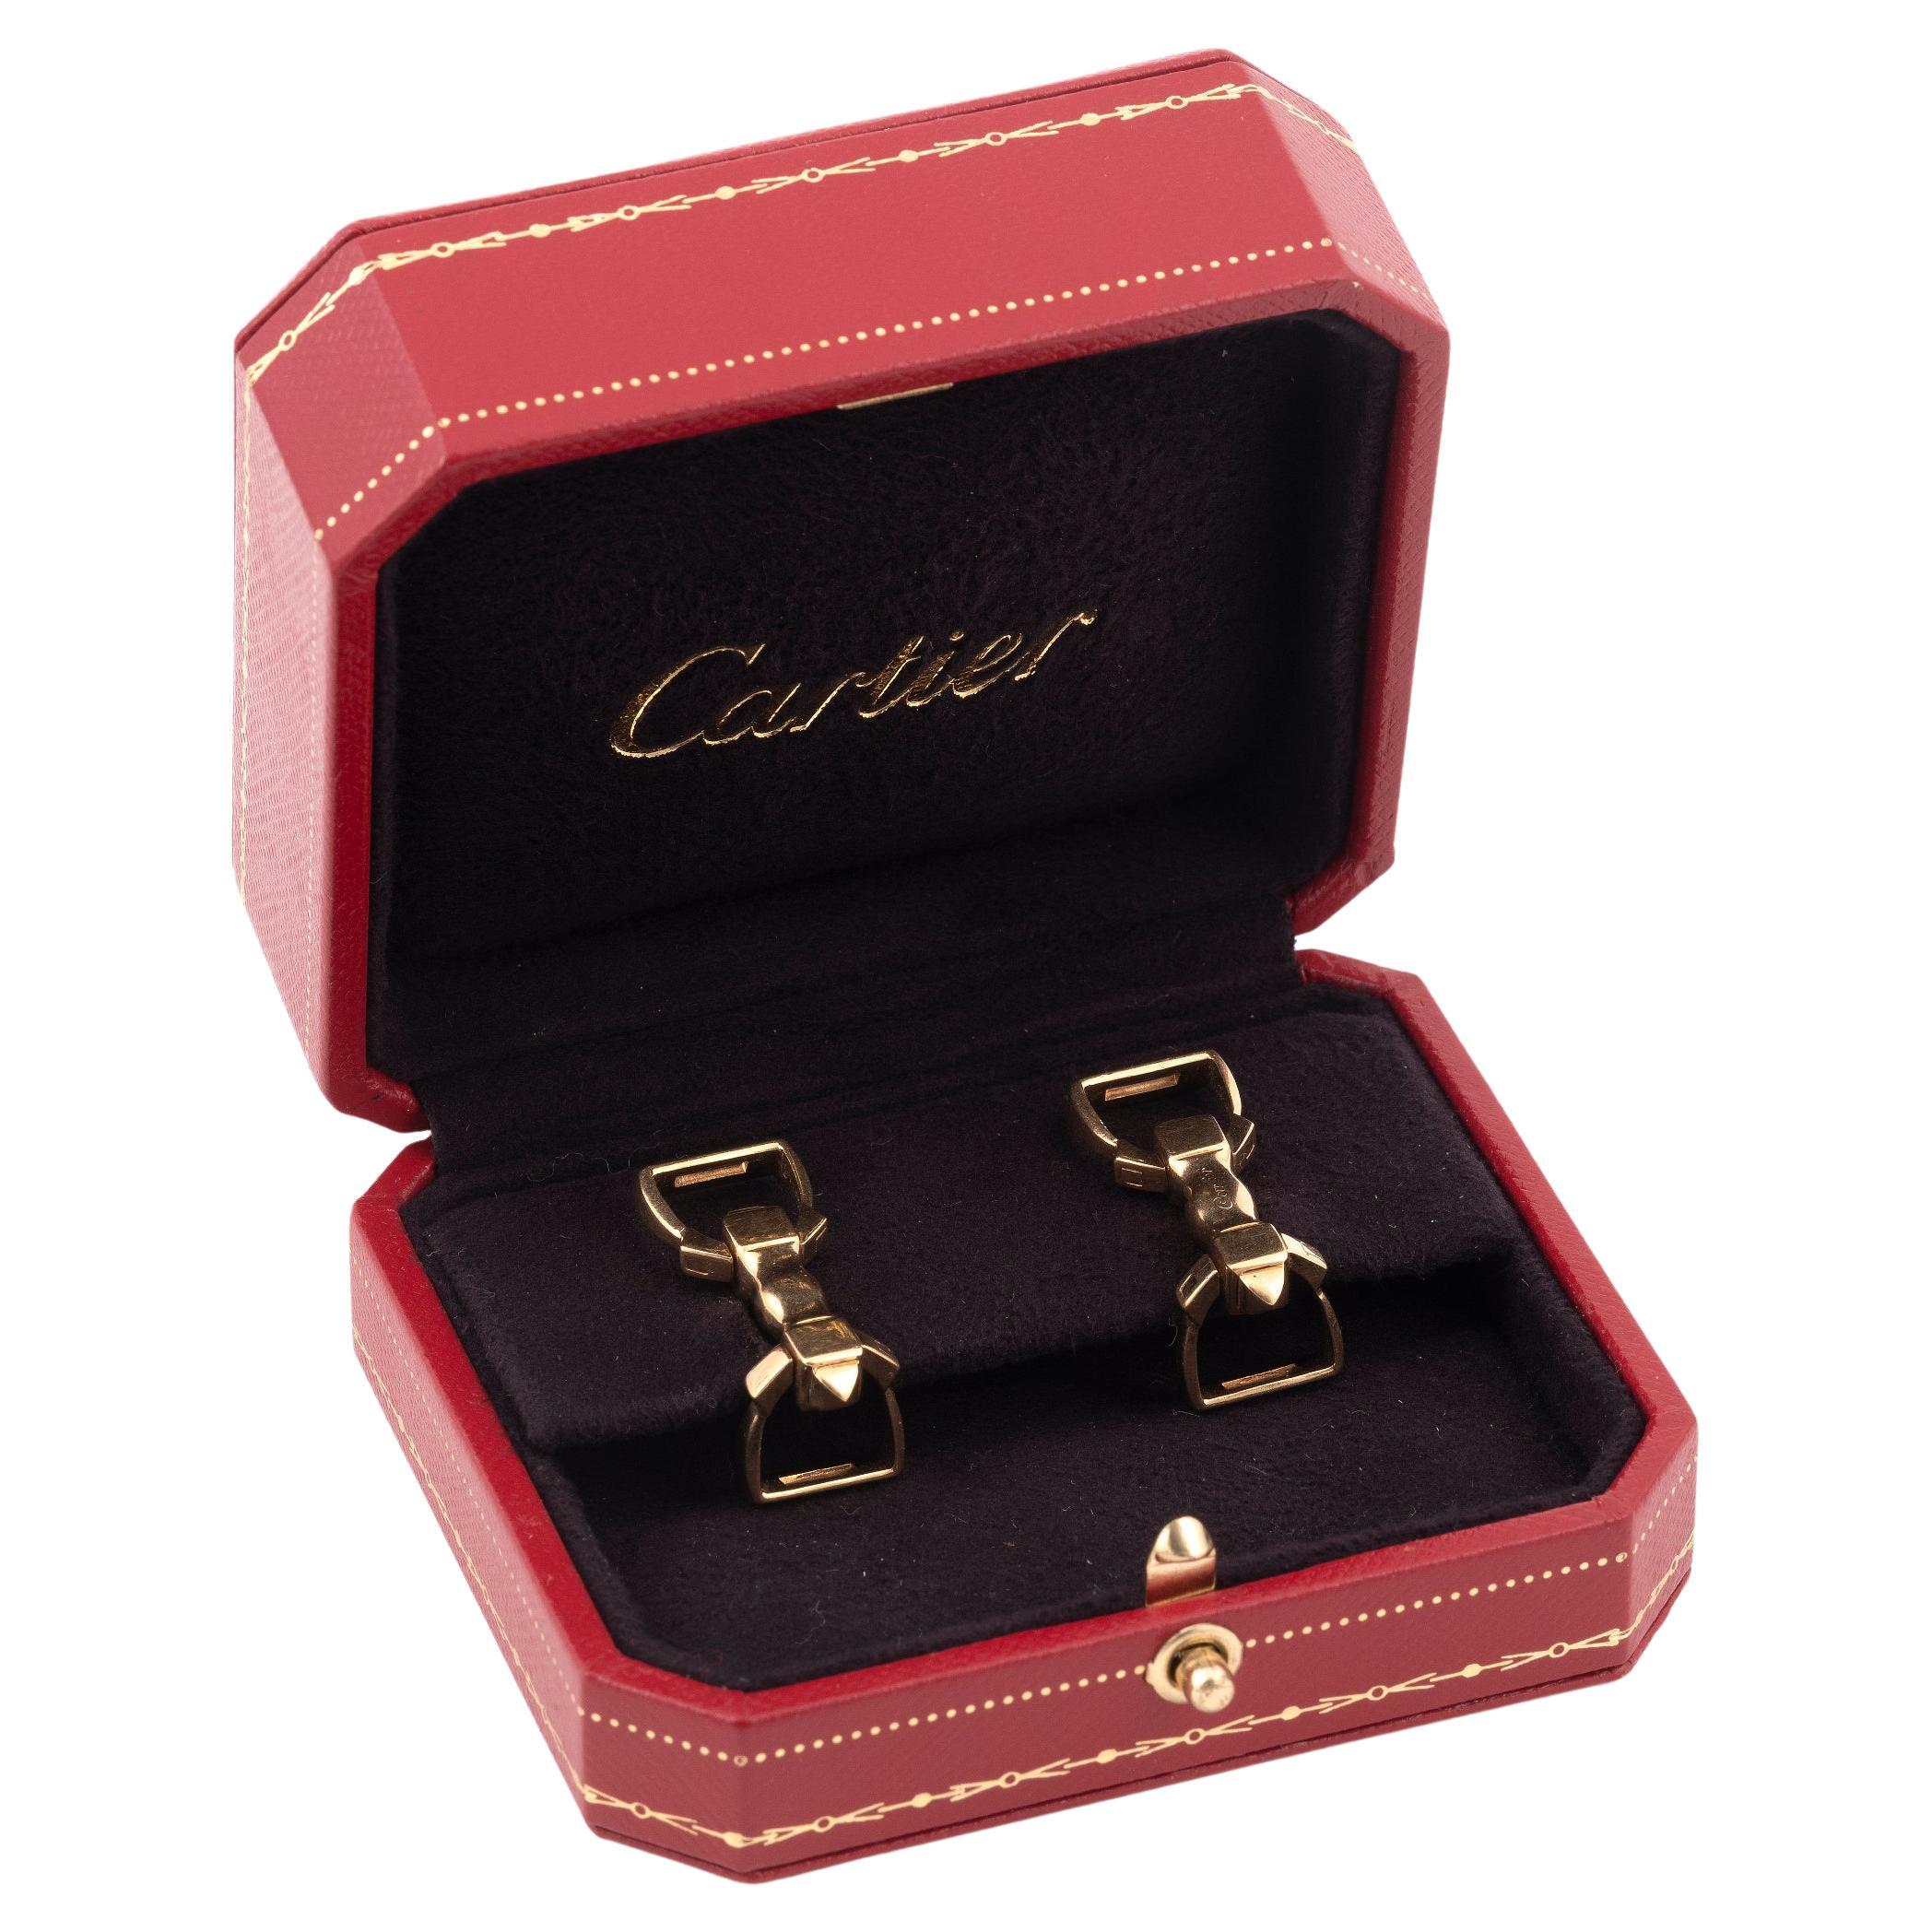 Cartier Manschettenknöpfe mit Steigbügel aus 18 Karat Gelbgold